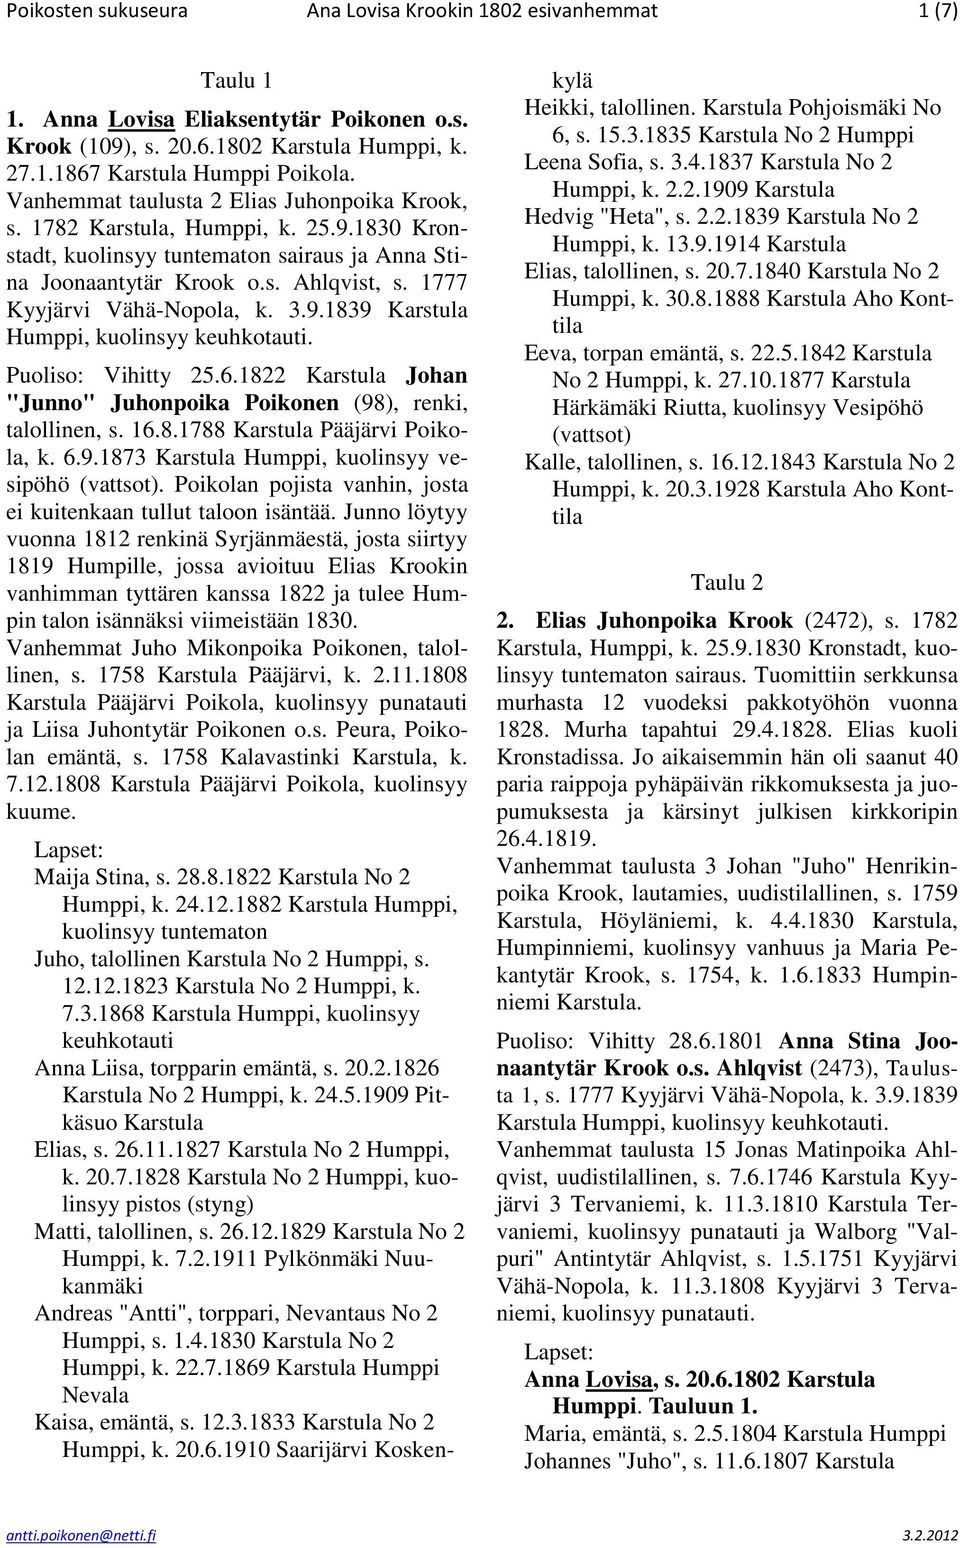 1777 Kyyjärvi Vähä-Nopola, k. 3.9.1839 Karstula Humppi, kuolinsyy keuhkotauti. Puoliso: Vihitty 25.6.1822 Karstula Johan "Junno" Juhonpoika Poikonen (98), renki, talollinen, s. 16.8.1788 Karstula Pääjärvi Poikola, k.